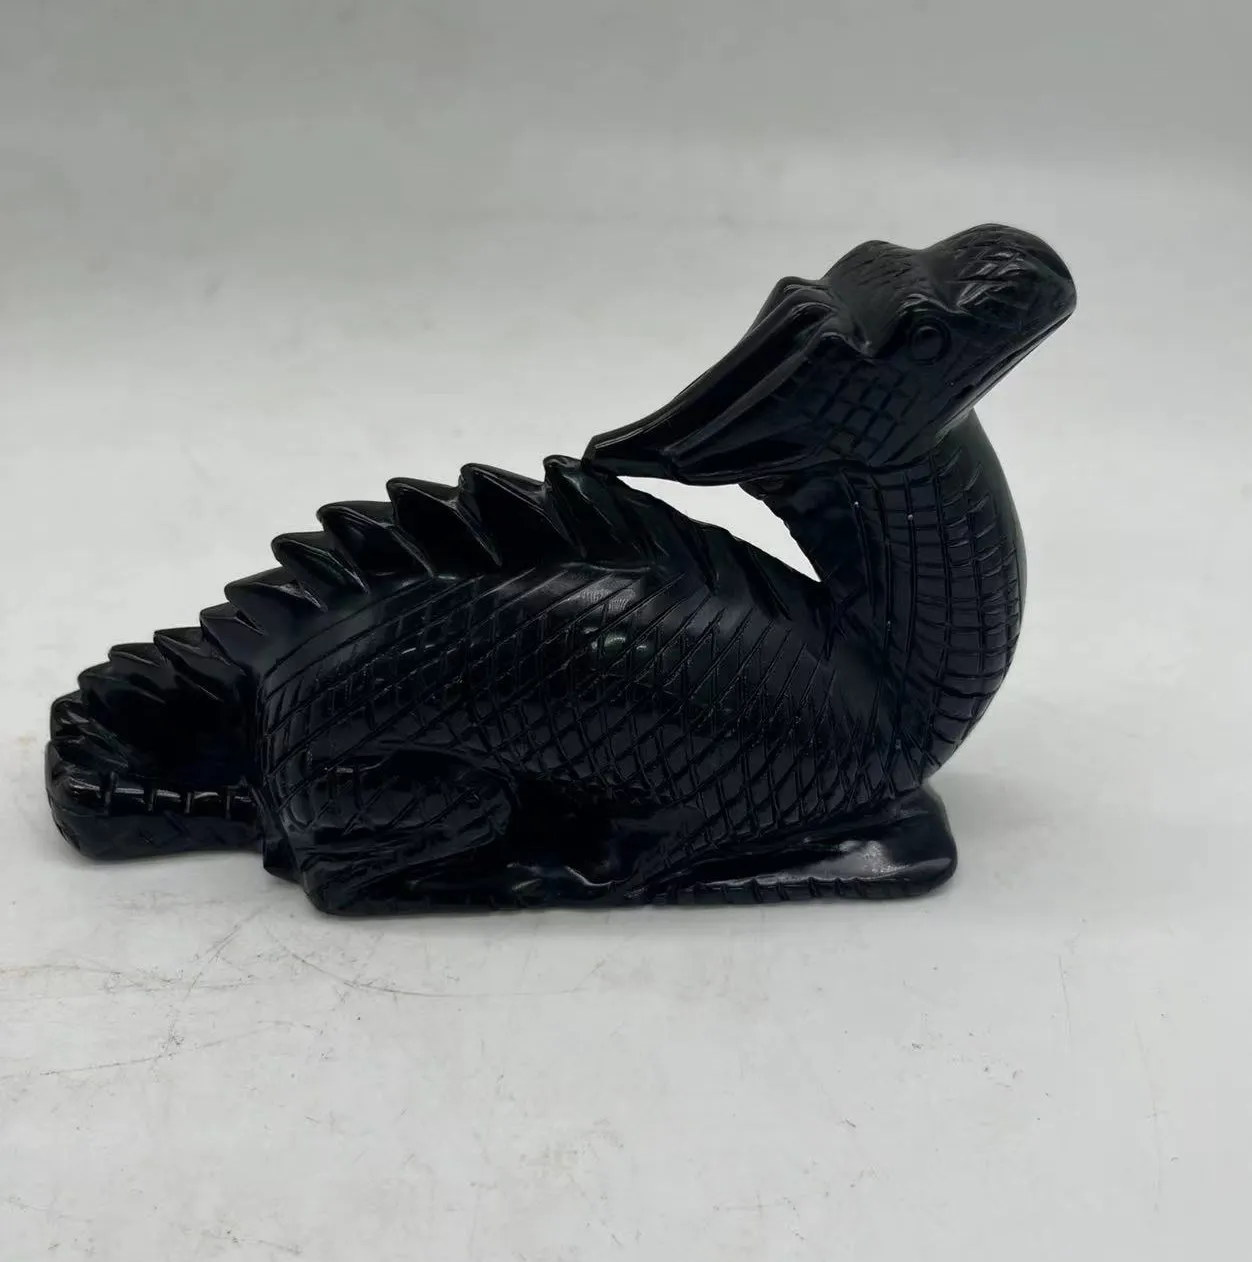 Folk Crafts Healing Crystals Obsidian Dragon Carving Black Obsidian dragon carvings